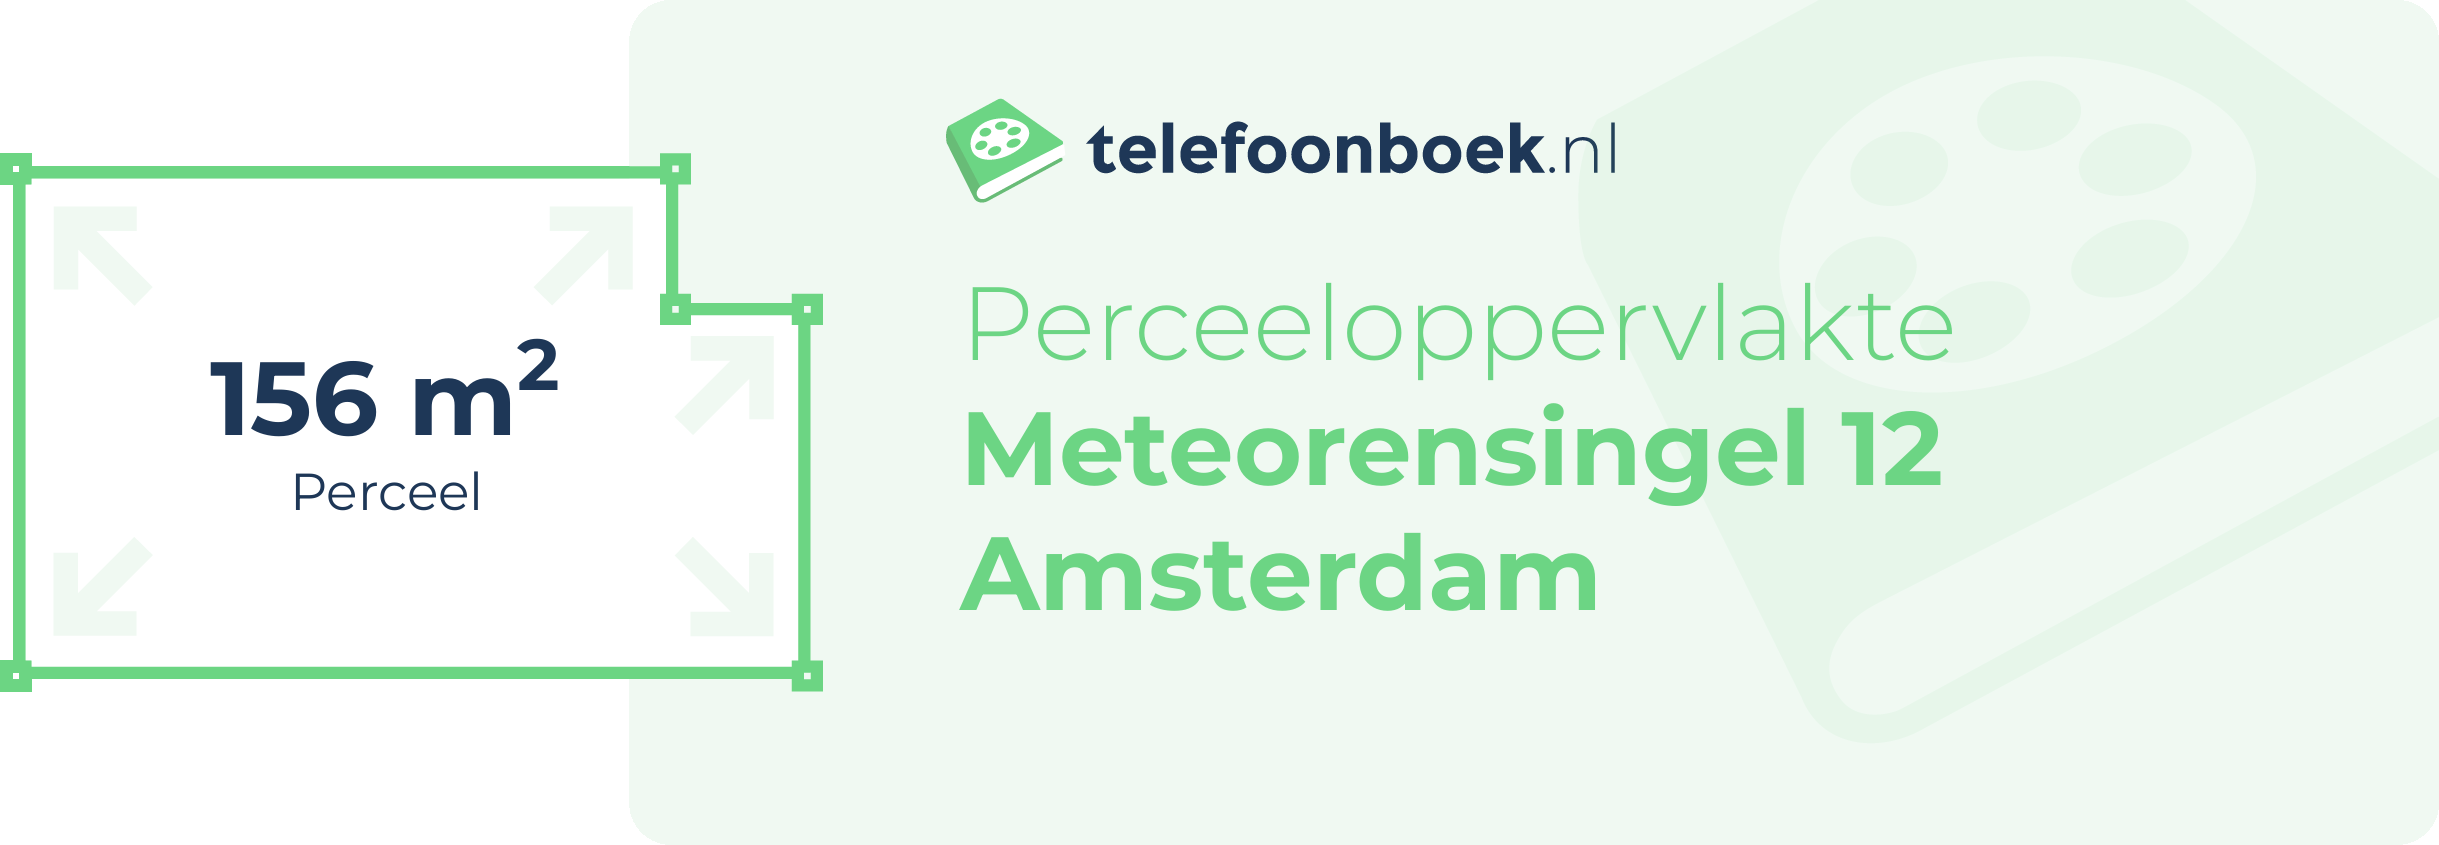 Perceeloppervlakte Meteorensingel 12 Amsterdam